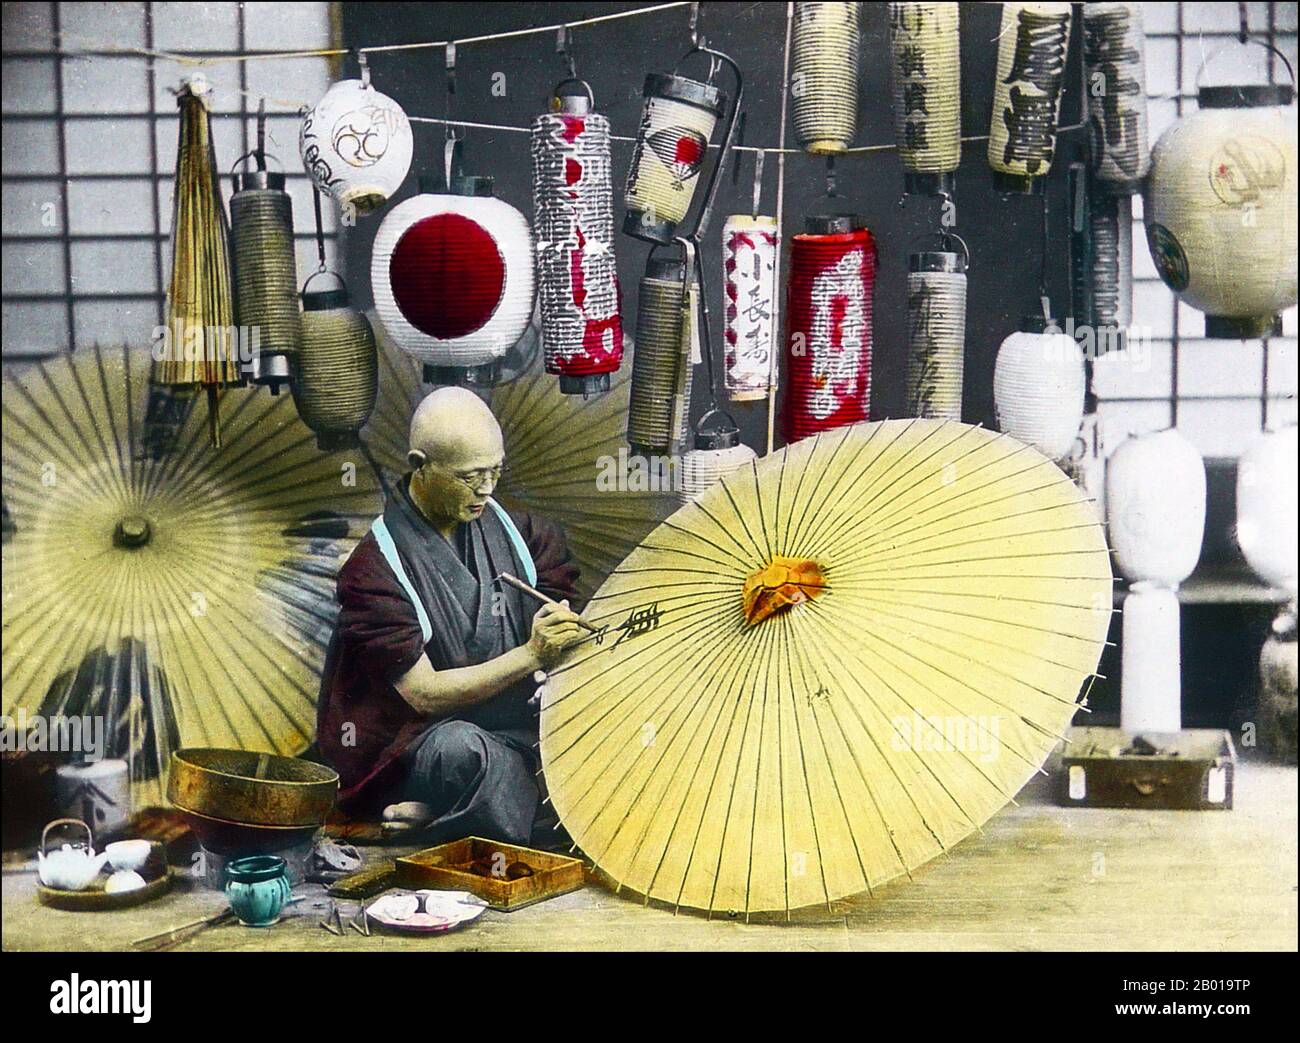 Giappone: Un produttore di ombrellone che dipinge un ombrellone. Foto di T. Enami (1859-1929), c.. 1900-1910. Enami (Enami Nobukuni) era il nome commerciale di un celebre fotografo del periodo Meiji. Il T. del suo nome commerciale è pensato per essere stato per Toshi, anche se non ha mai scritto fuori su qualsiasi documento personale o di affari. Nato a Edo (ora Tokyo) durante l'era Bakumatsu, Enami fu prima studente di, e poi assistente del noto fotografo e collotipista, Ogawa Kazumasa. Enami si è rilocato a Yokohama, e ha aperto uno studio a Benten-dōri (Benten Street) nel 1892. Foto Stock